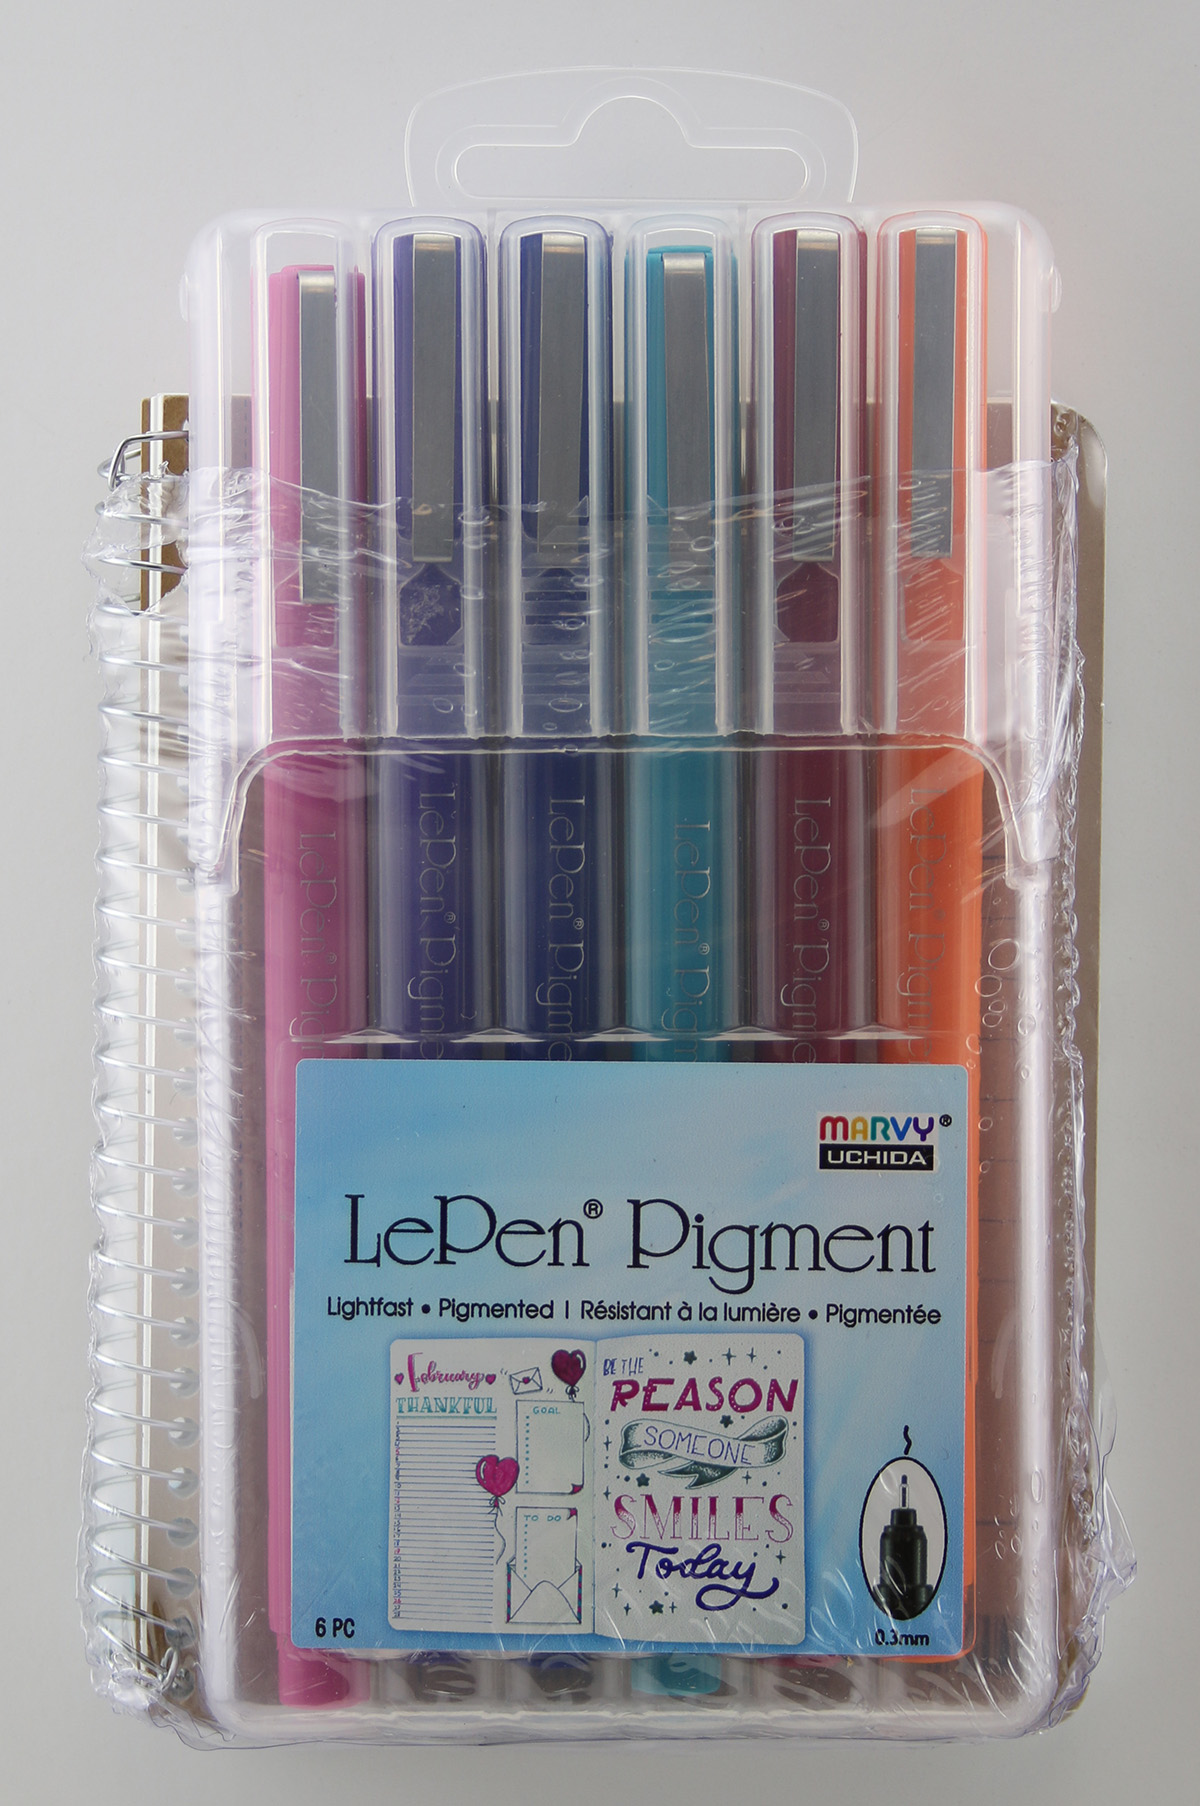 Le Pens Florescent Set - 0.3mm Fine Point Pens - Smudge Proof Ink - 6